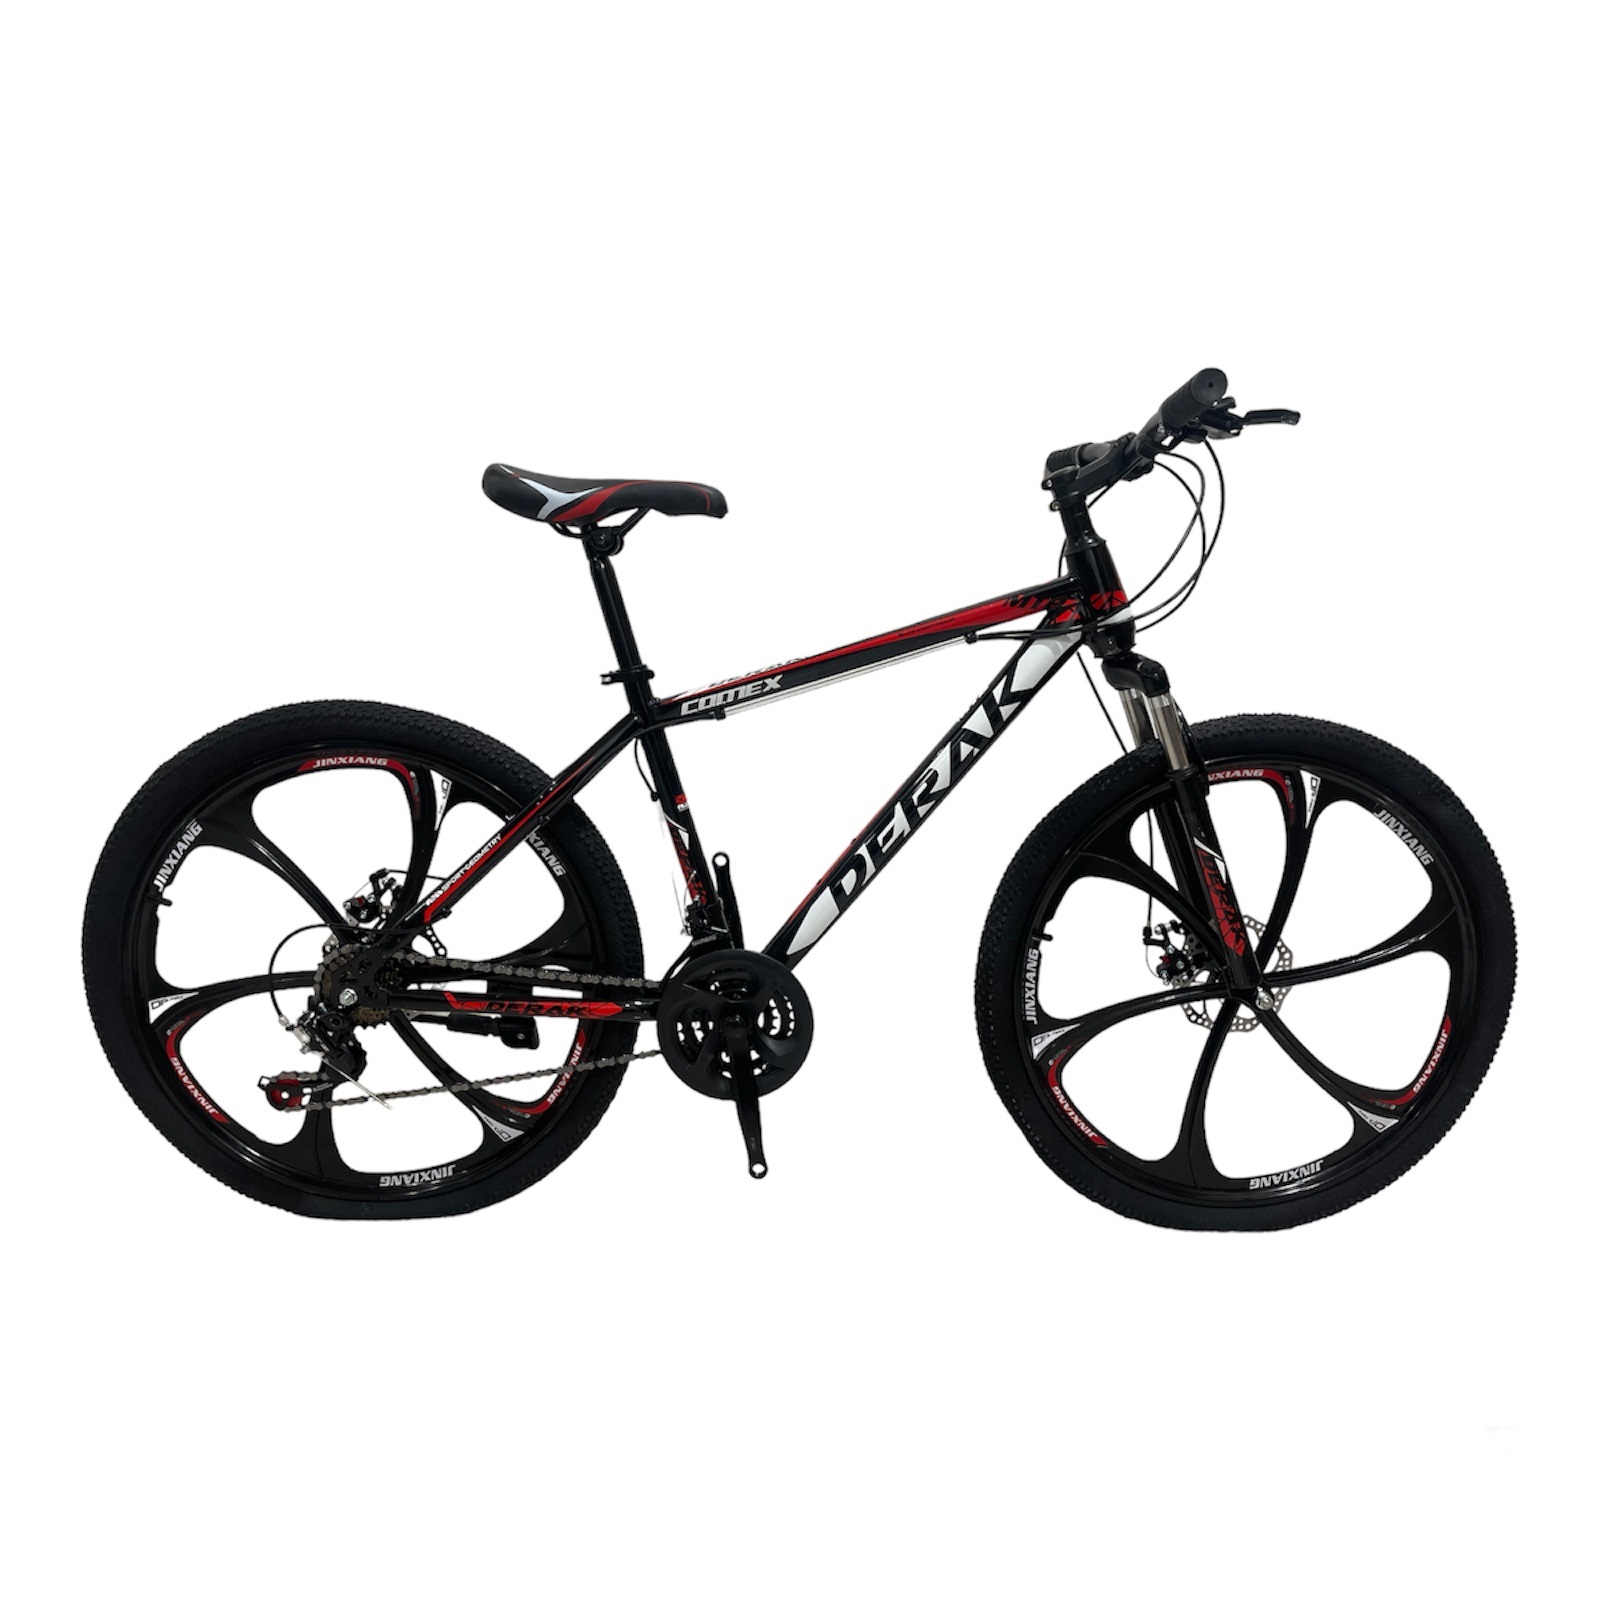 نکته خرید - قیمت روز دوچرخه کوهستان دراک مدل کمکس اسپرت سایز طوقه 26 خرید